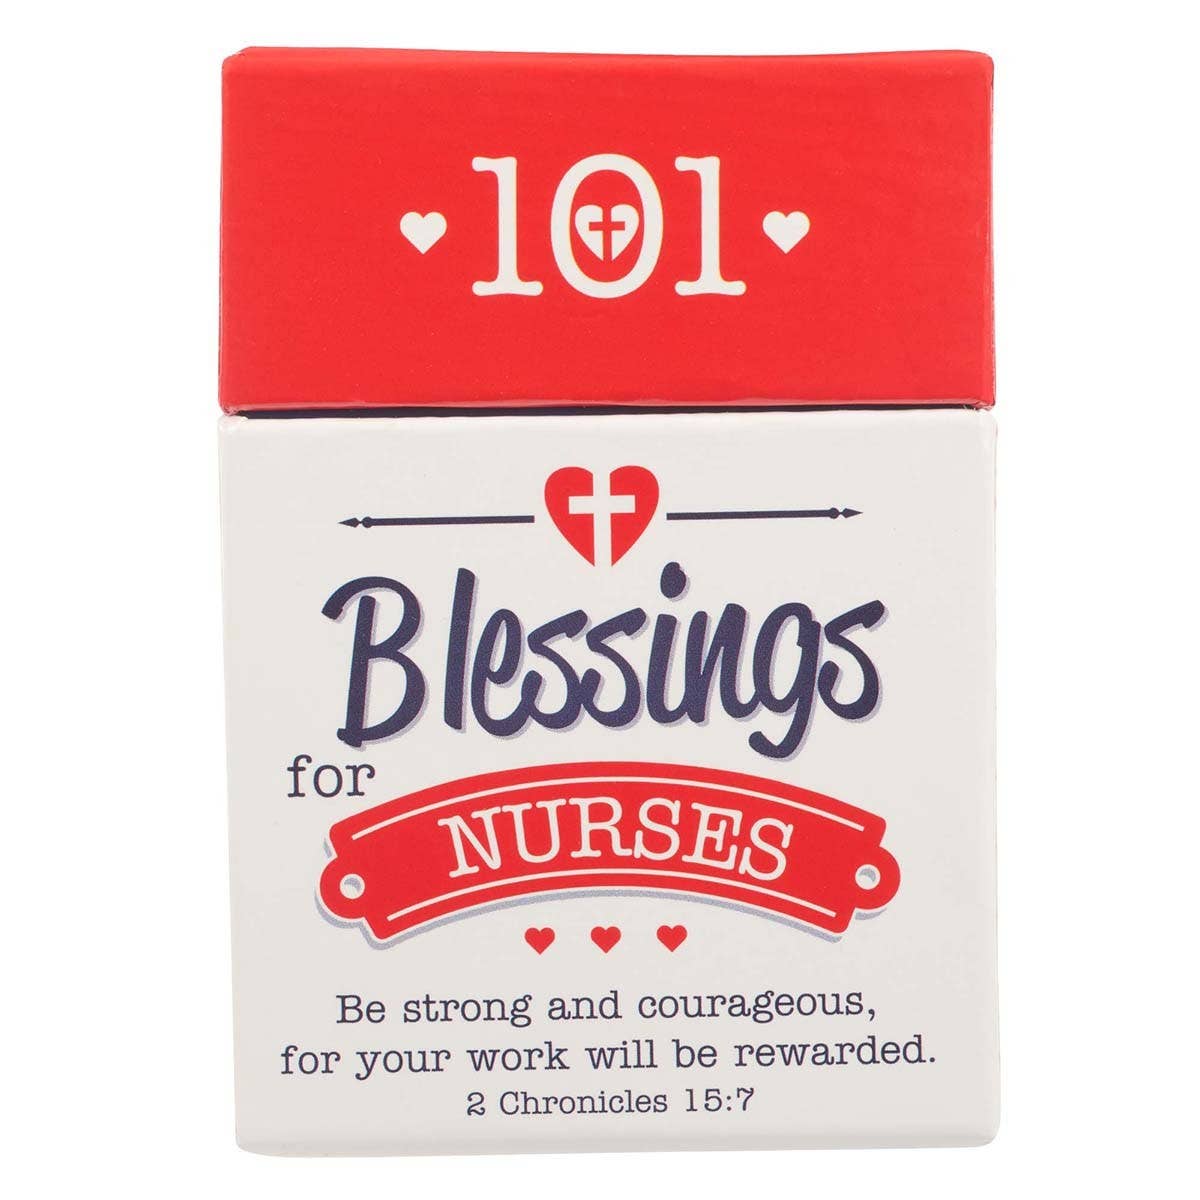 101 Blessings for Nurses - 2 Chronicles 15:7